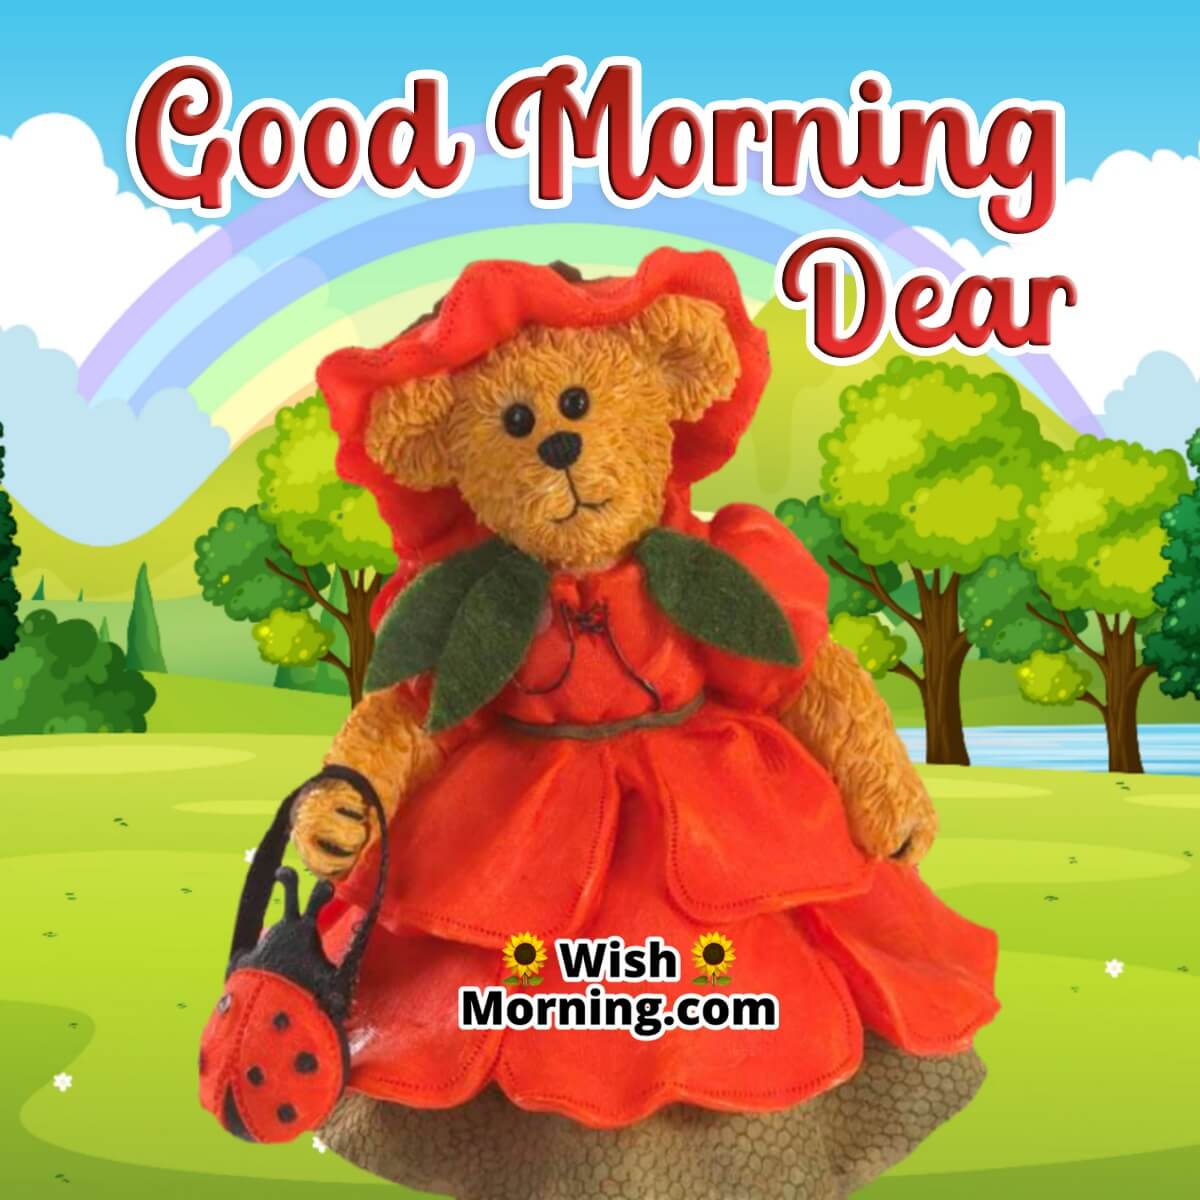 Good Morning Teddy Bear Dear